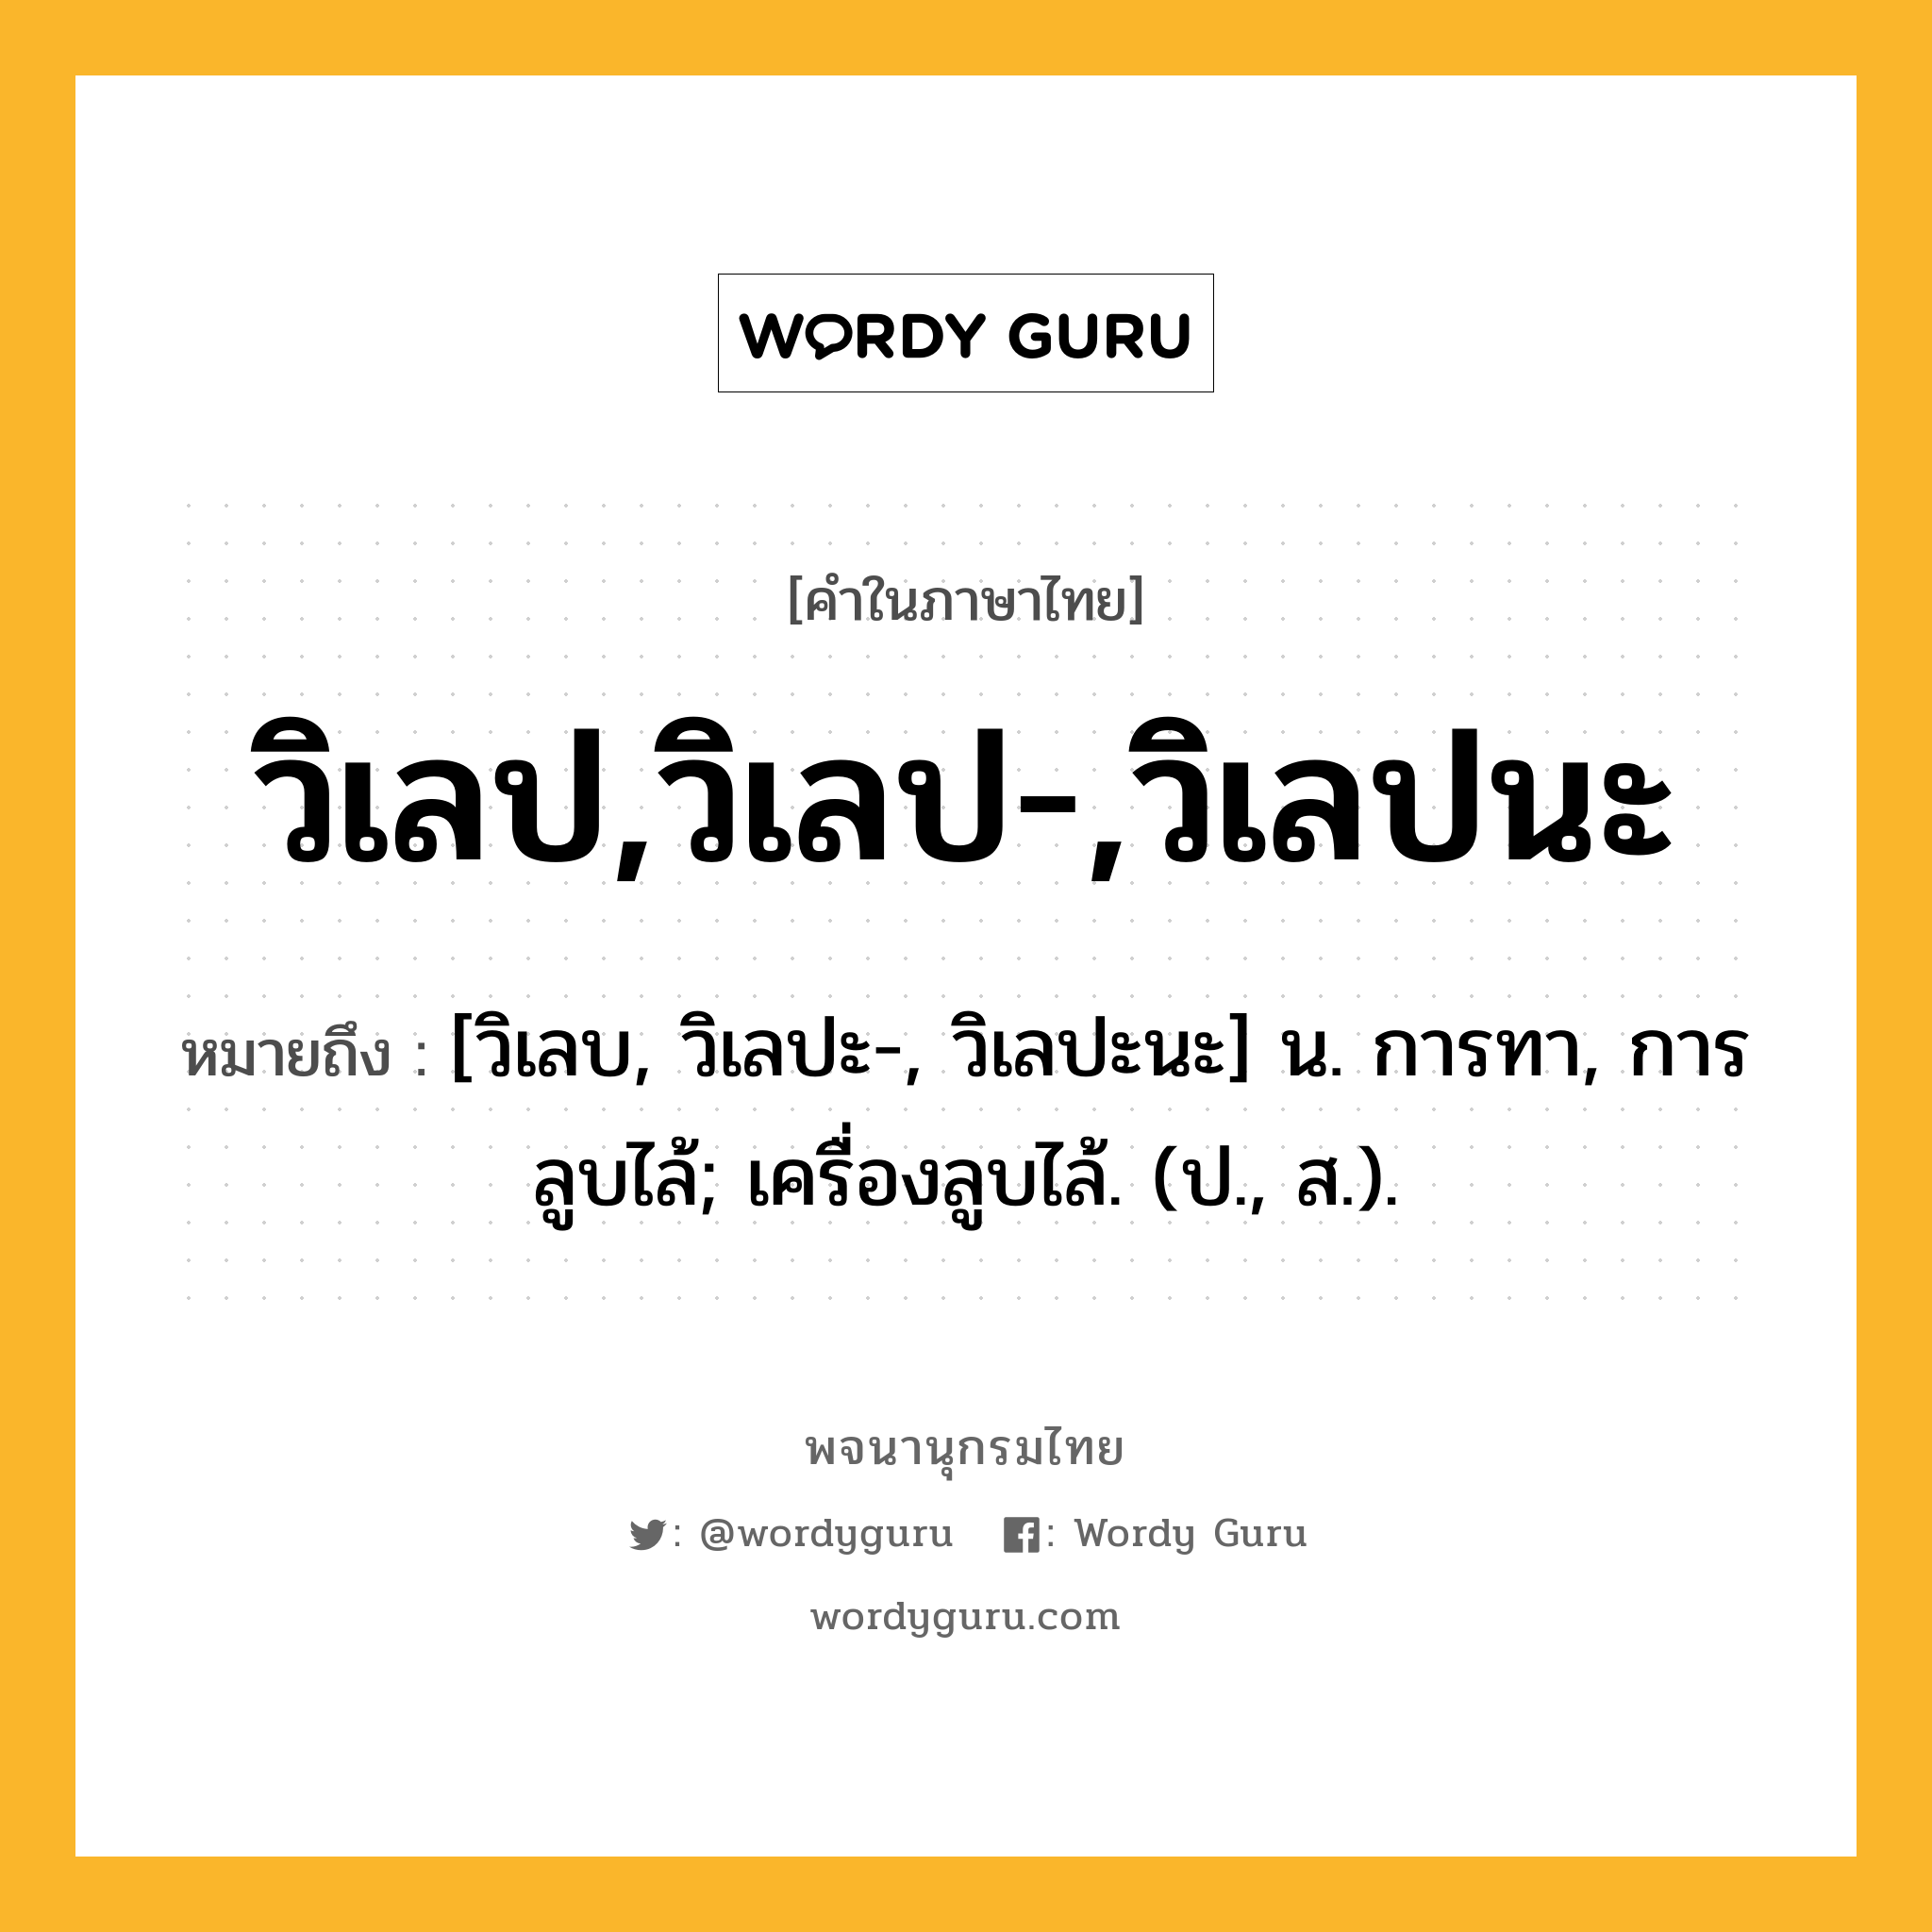 วิเลป,วิเลป-,วิเลปนะ ความหมาย หมายถึงอะไร?, คำในภาษาไทย วิเลป,วิเลป-,วิเลปนะ หมายถึง [วิเลบ, วิเลปะ-, วิเลปะนะ] น. การทา, การลูบไล้; เครื่องลูบไล้. (ป., ส.).